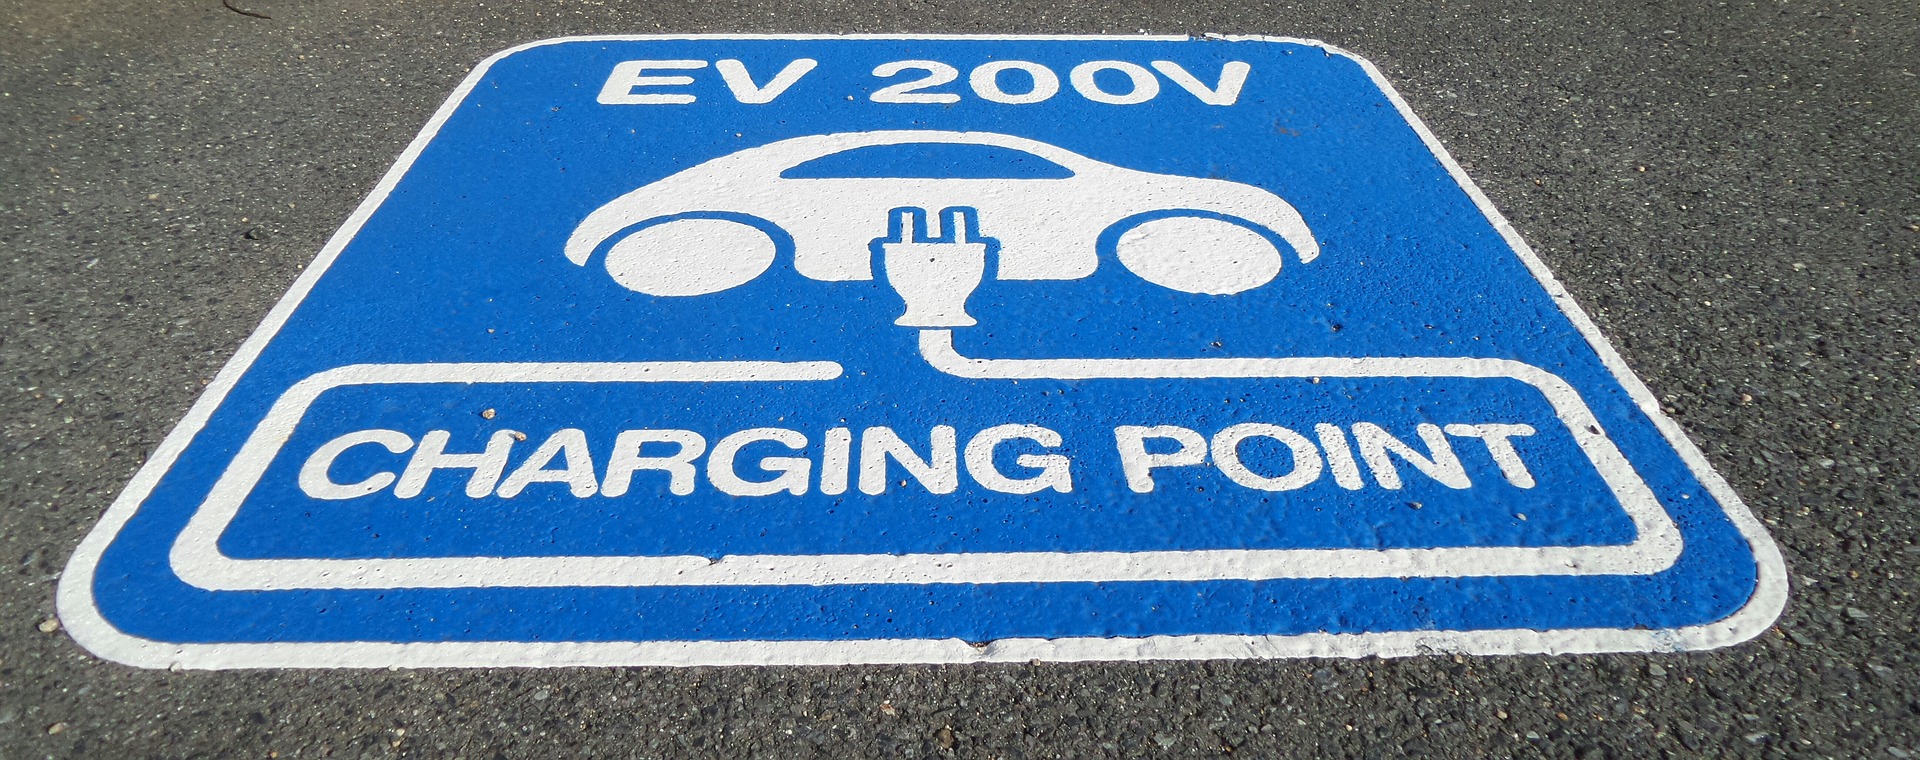 TSG Group en EVBox Group bieden samen laadoplossingen voor elektrische voertuigen in Europa aan